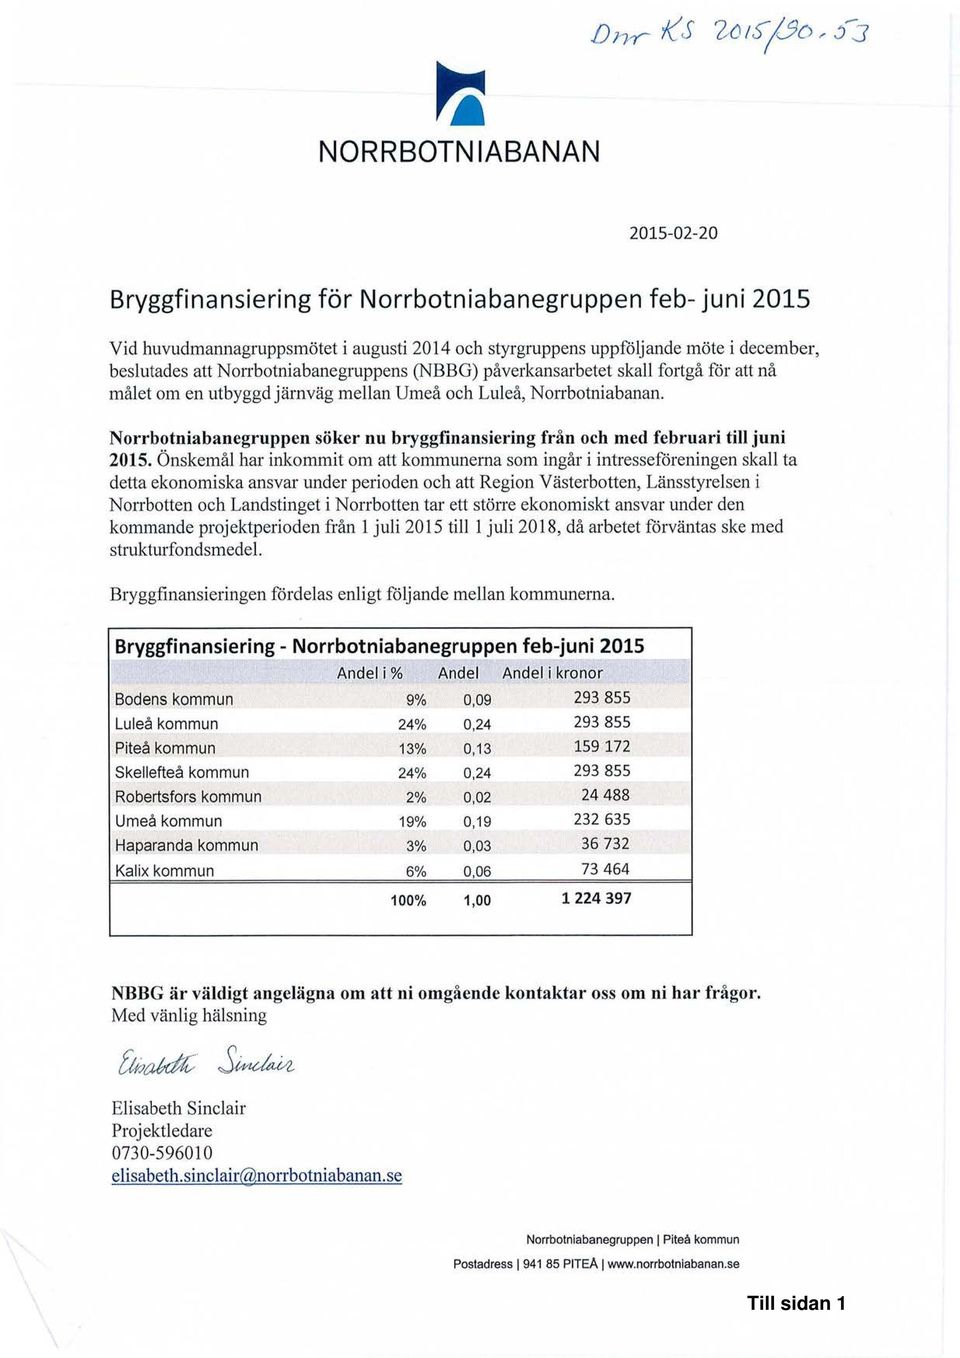 Norrbotniabanegruppen söker nu bryggfinansiering från och med februari till juni 2015.